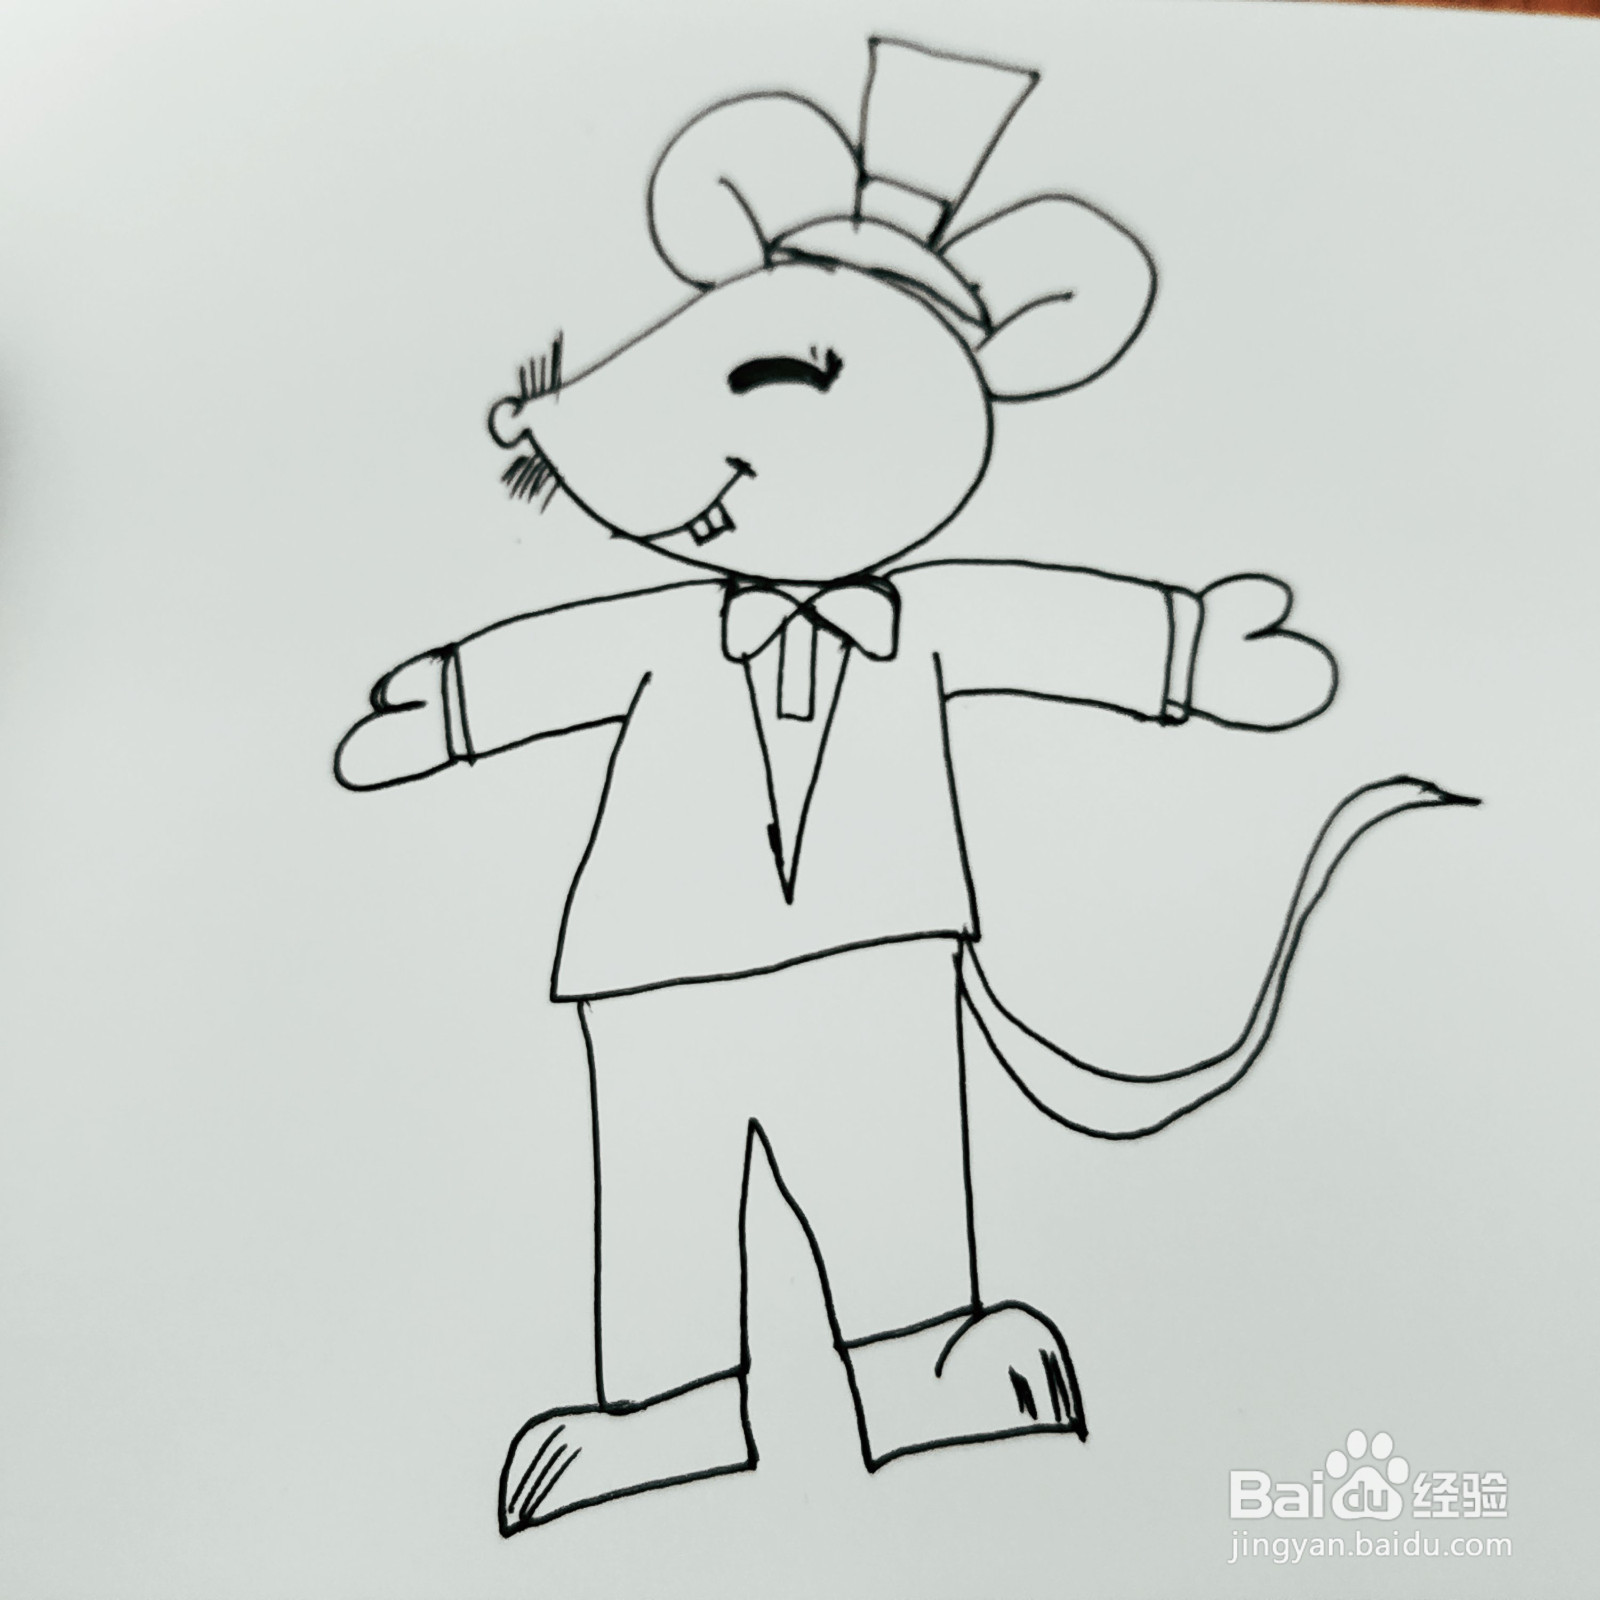 如何来画一只绅士的老鼠先生简笔画呢?